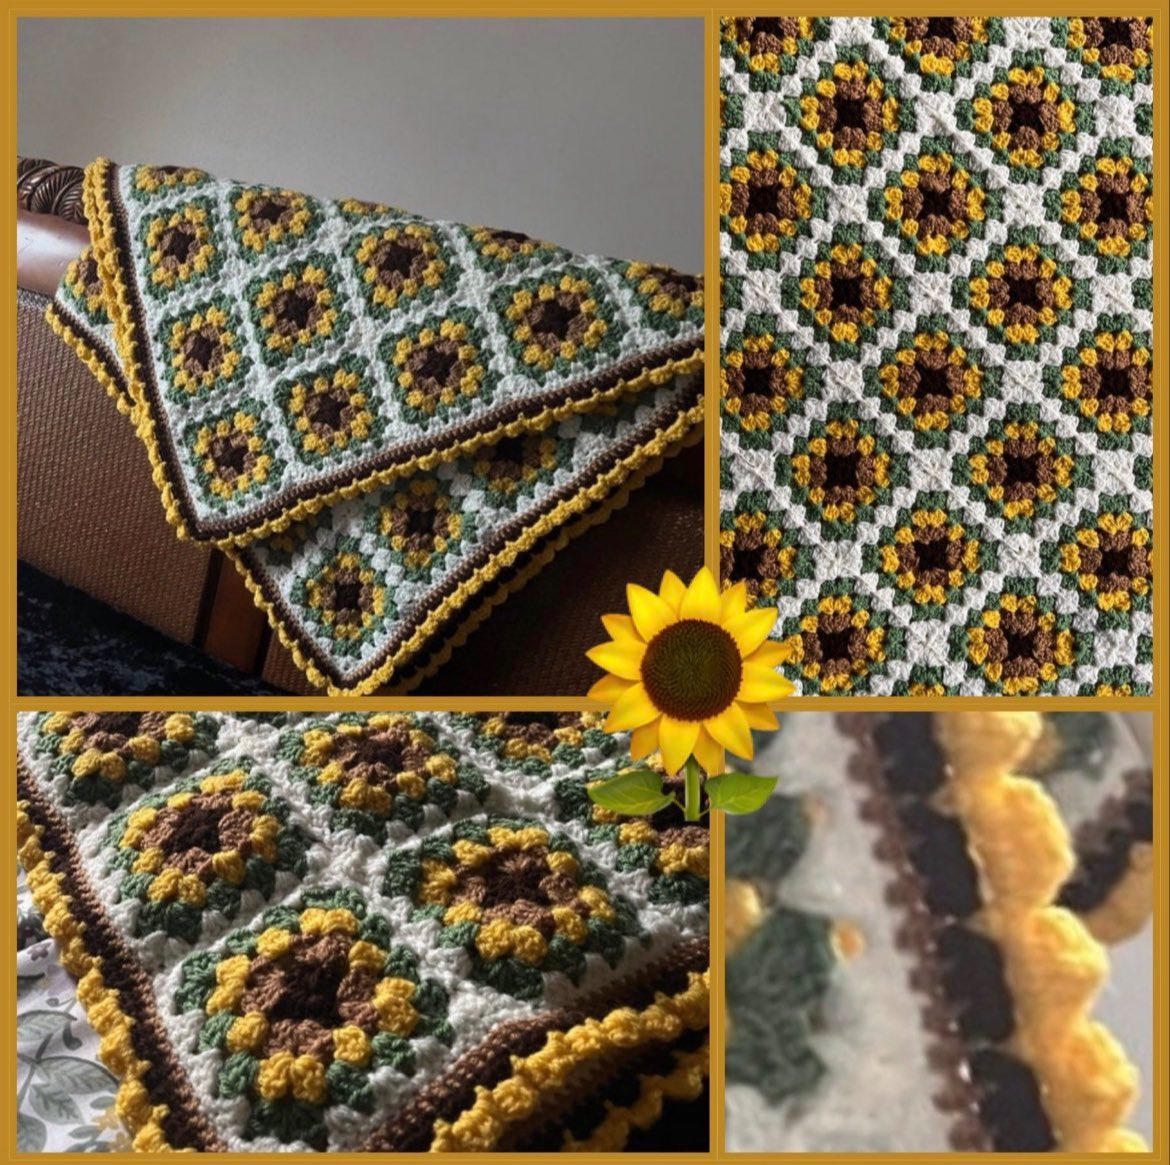 Handmade Crochet Sunflower Blanket 🌻🌻🌻 
#crochetflower #MHHSBD #wip #magic #handmade #crochet #craftbizparty #elevenseshour #crochetsunflowers #sunflowers #sunflowerblanket #picnicblanket #crochet #giftideas dwcrochetpatterns.etsy.com/listing/124623…